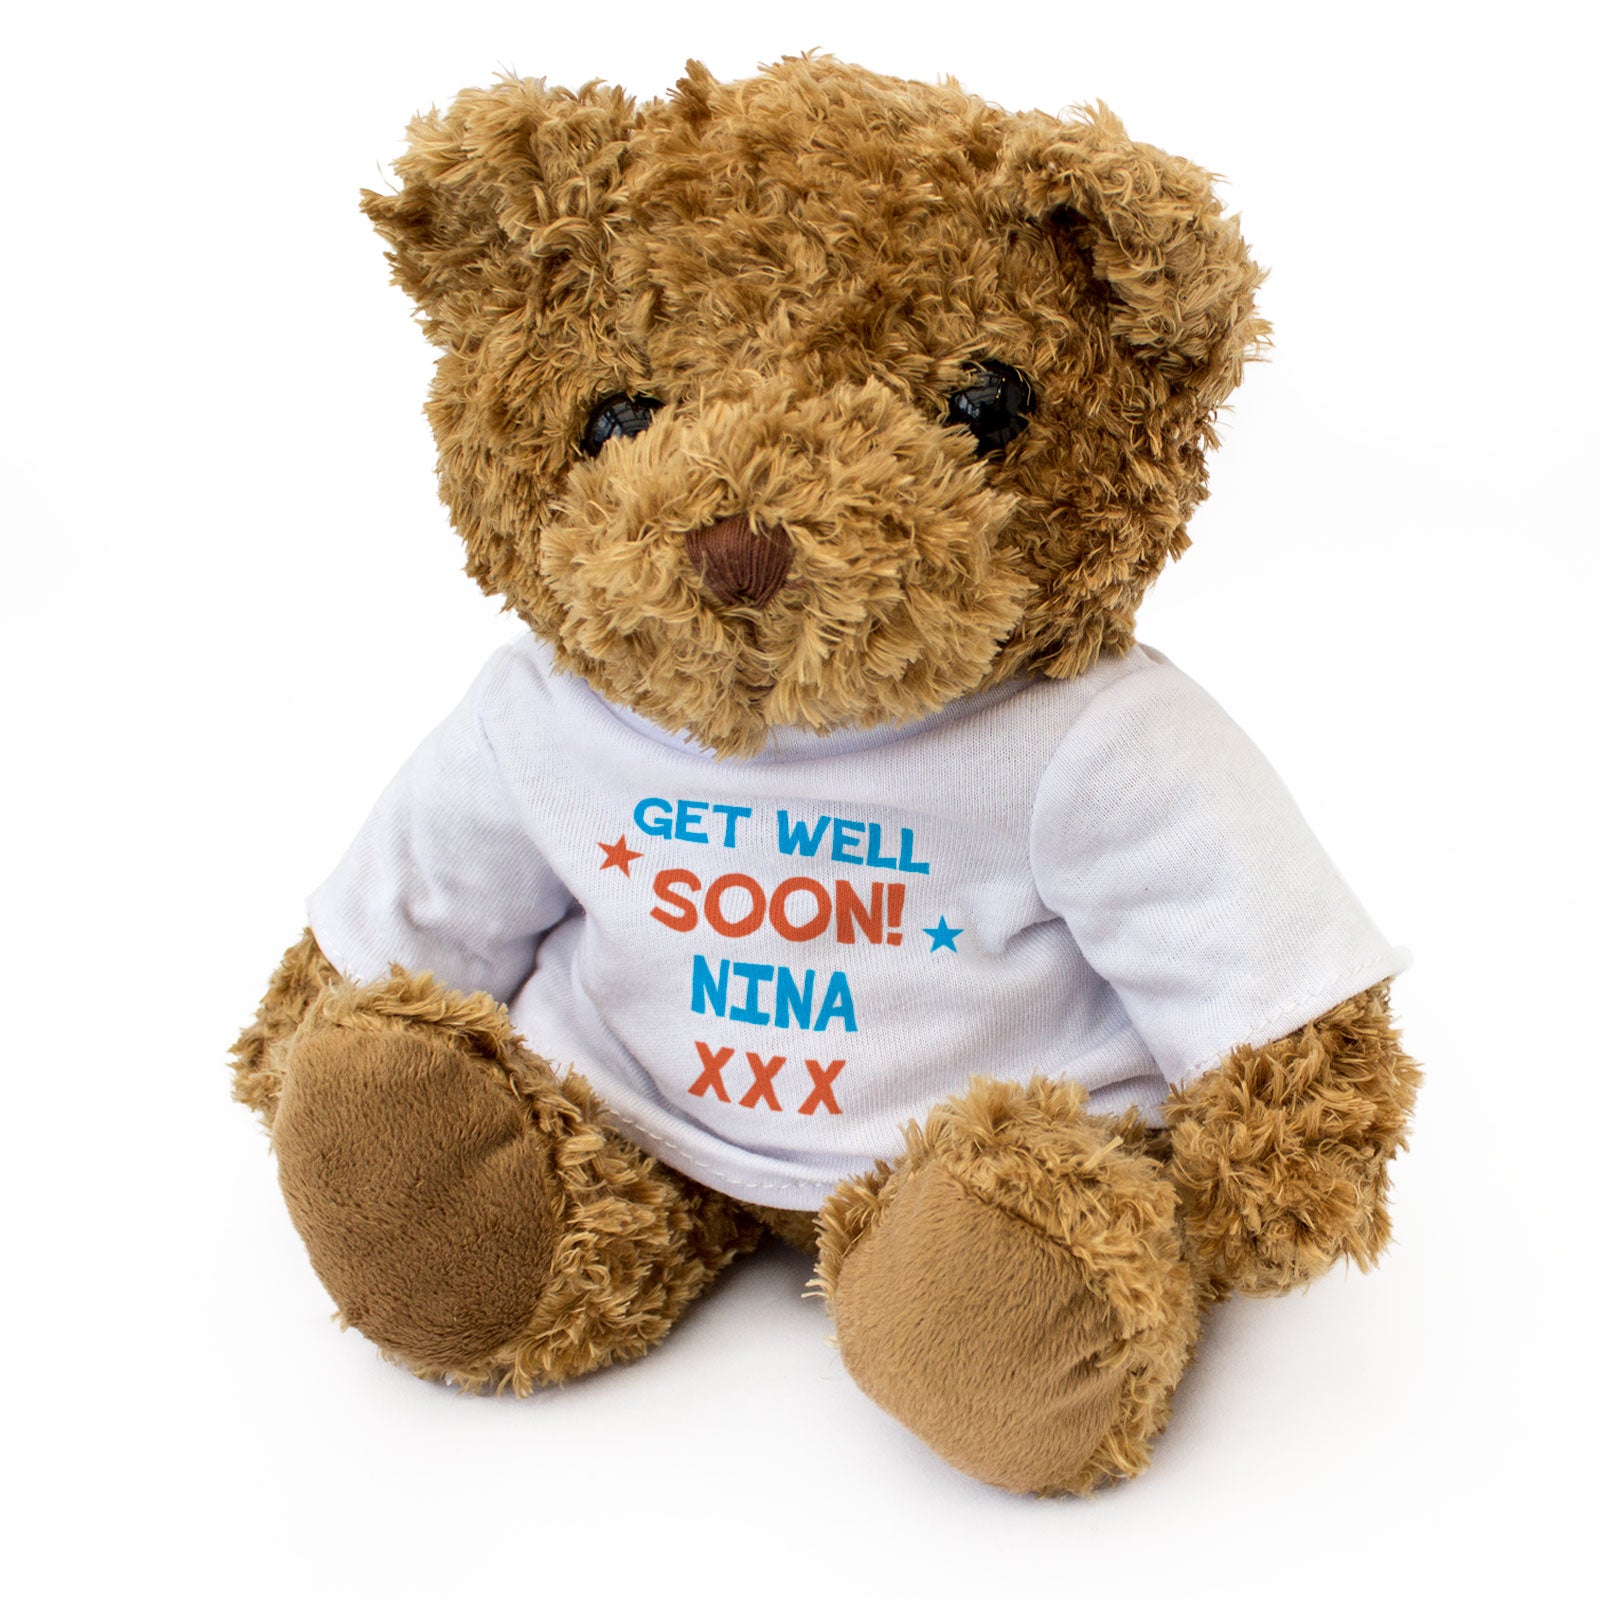 ღ Teddy / Get well soon! - by Nina ღ Picture #124389685